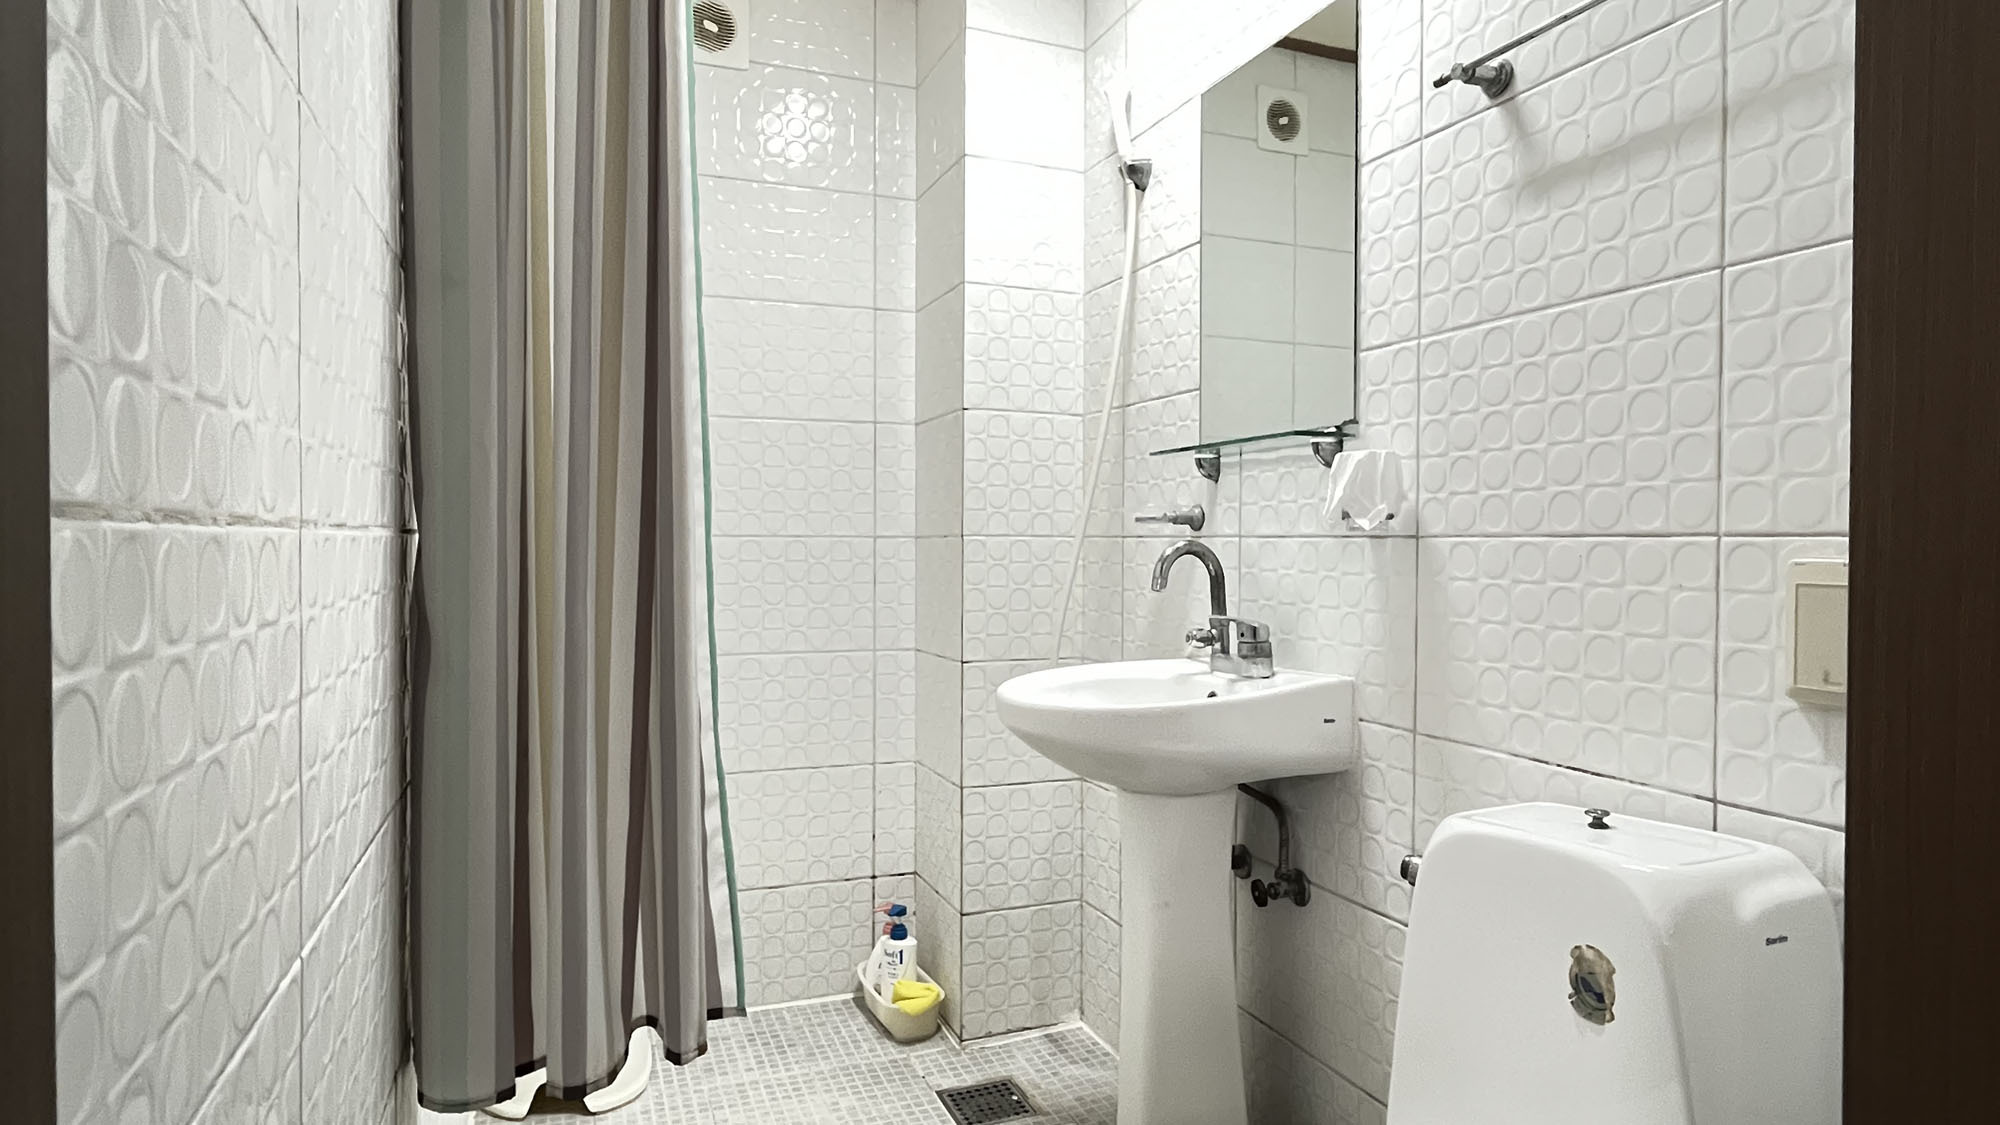 【客室】ツインシャワー・トイレ付きシャワーとトイレは防水カーテンで仕切られています*